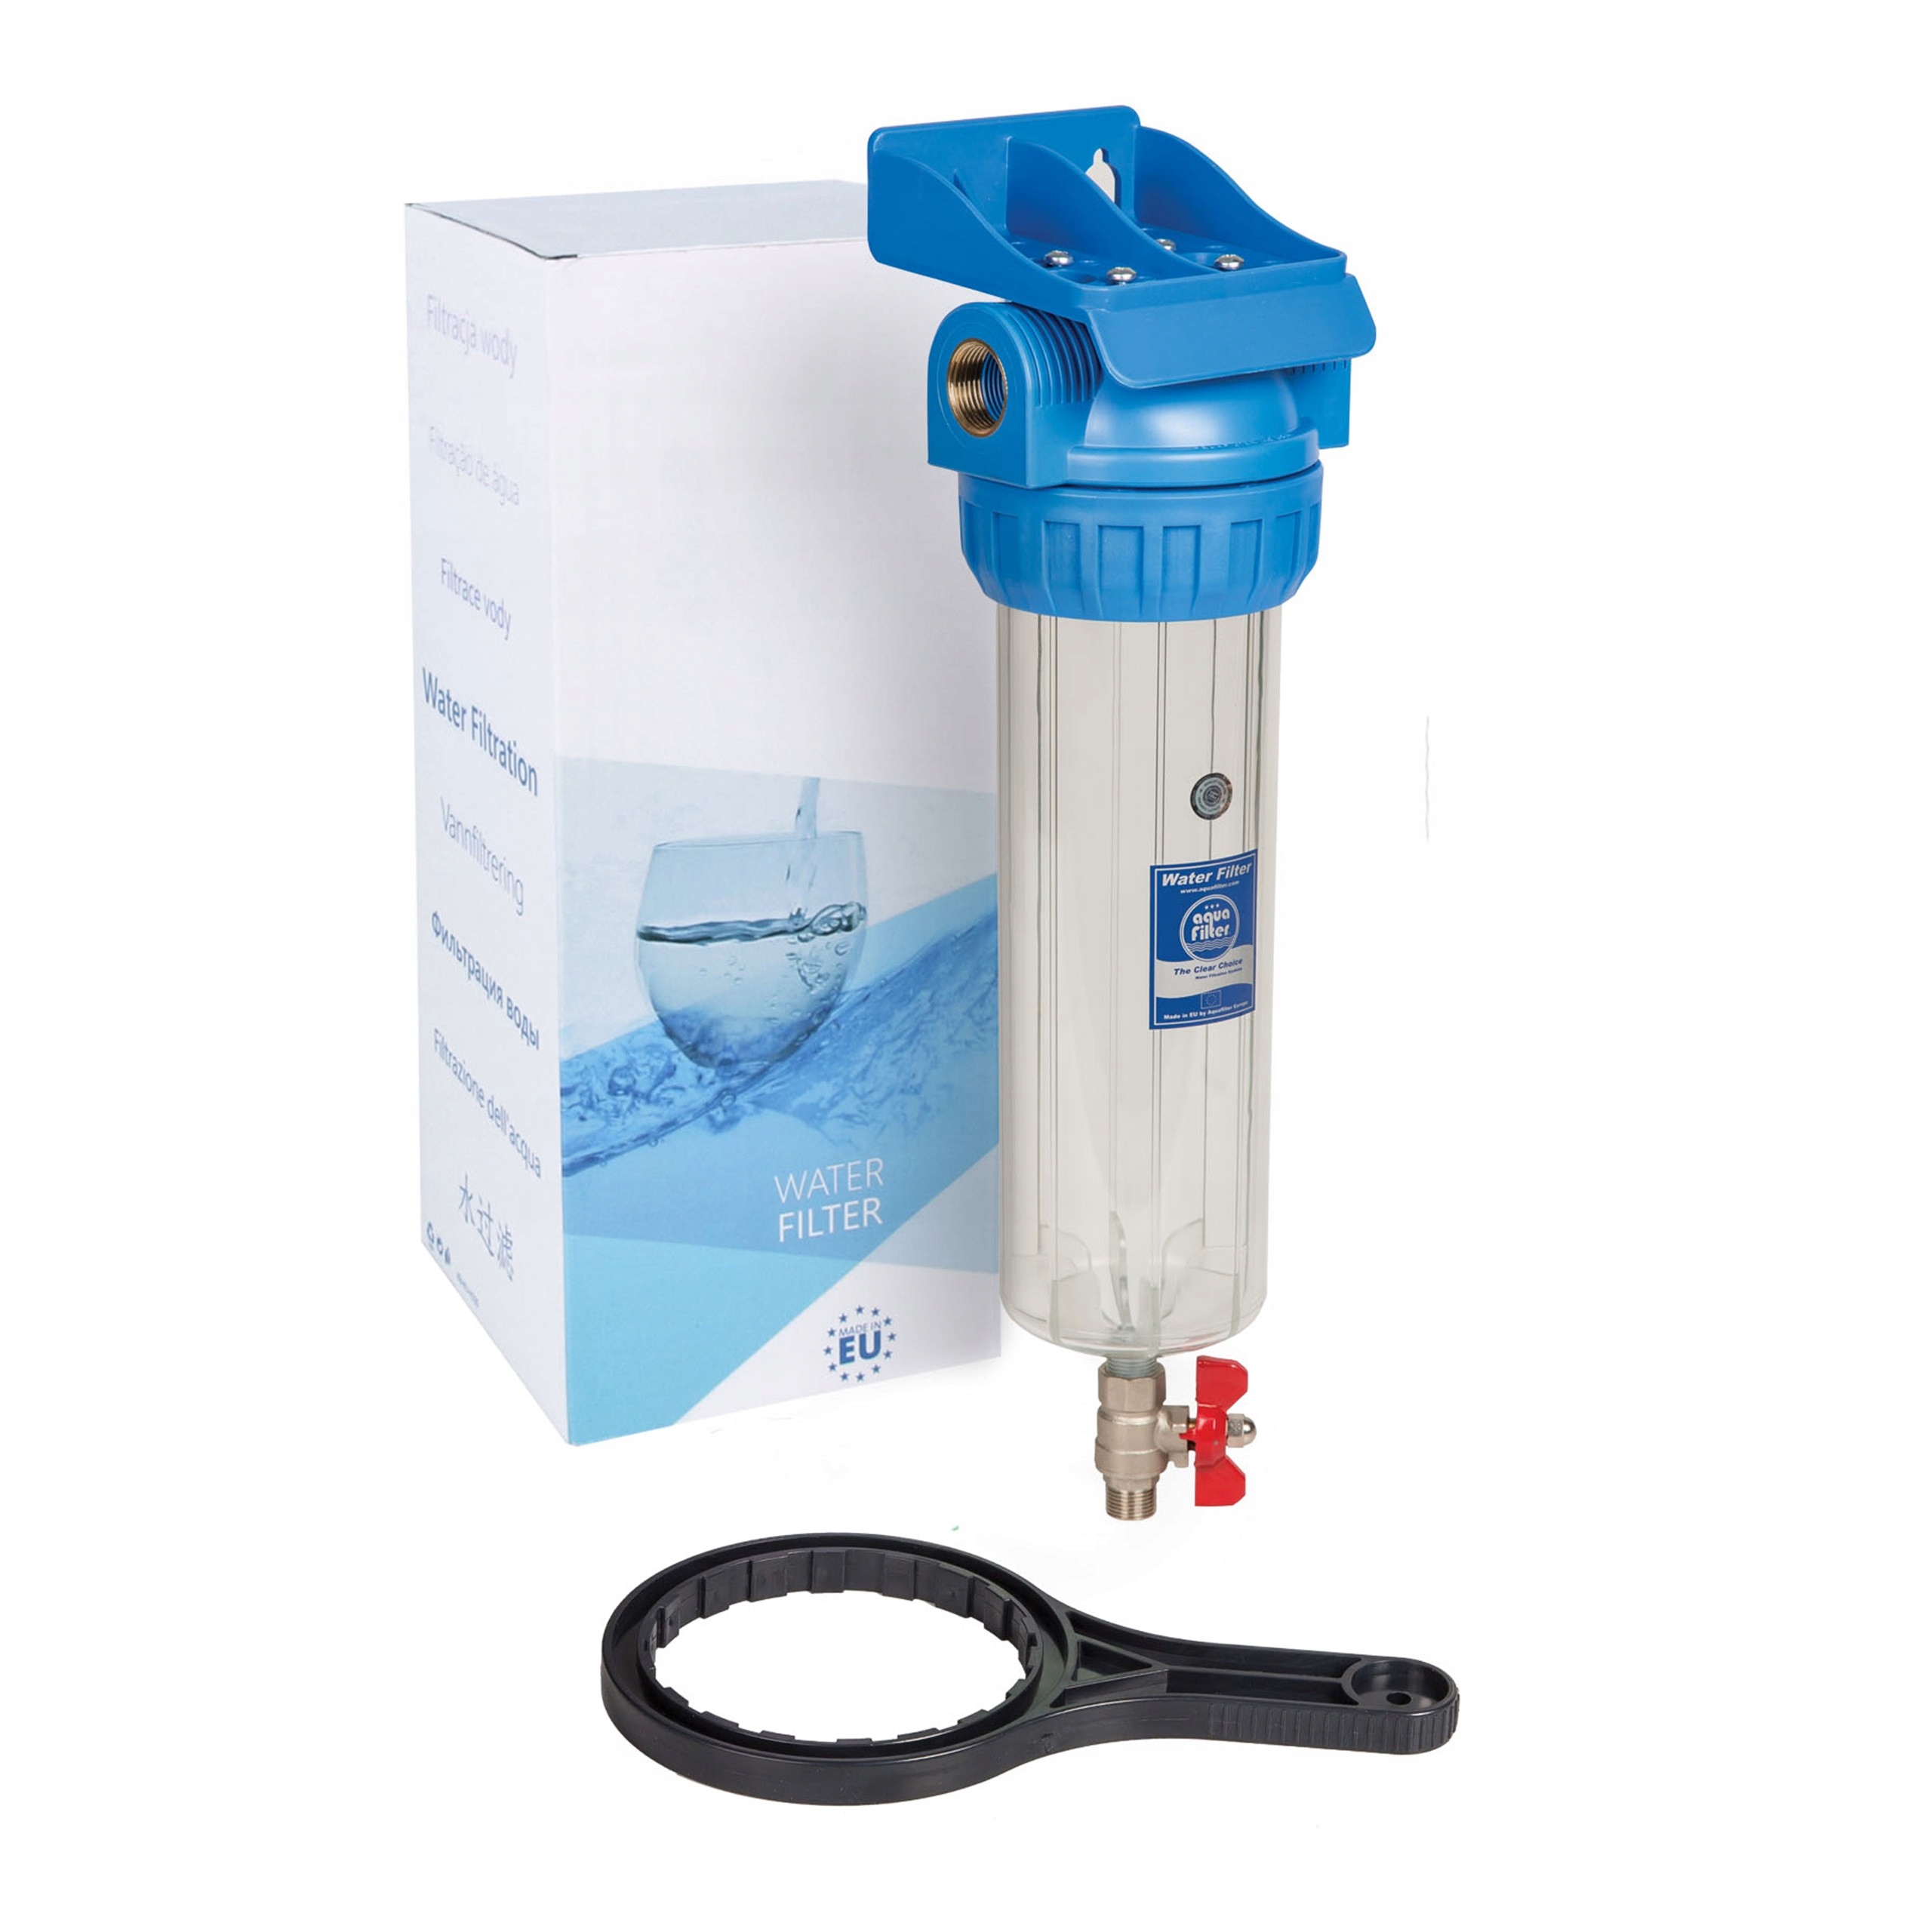 Вода со сменными картриджами. Фильтр Aquafilter fhpr1-hp1. Фильтр магистральный Aquafilter h10g-fhpr34-3vr. Колба sl10 1/2 Аквафор. Корпус фильтра Aquafilter fhpr12-3v_r.